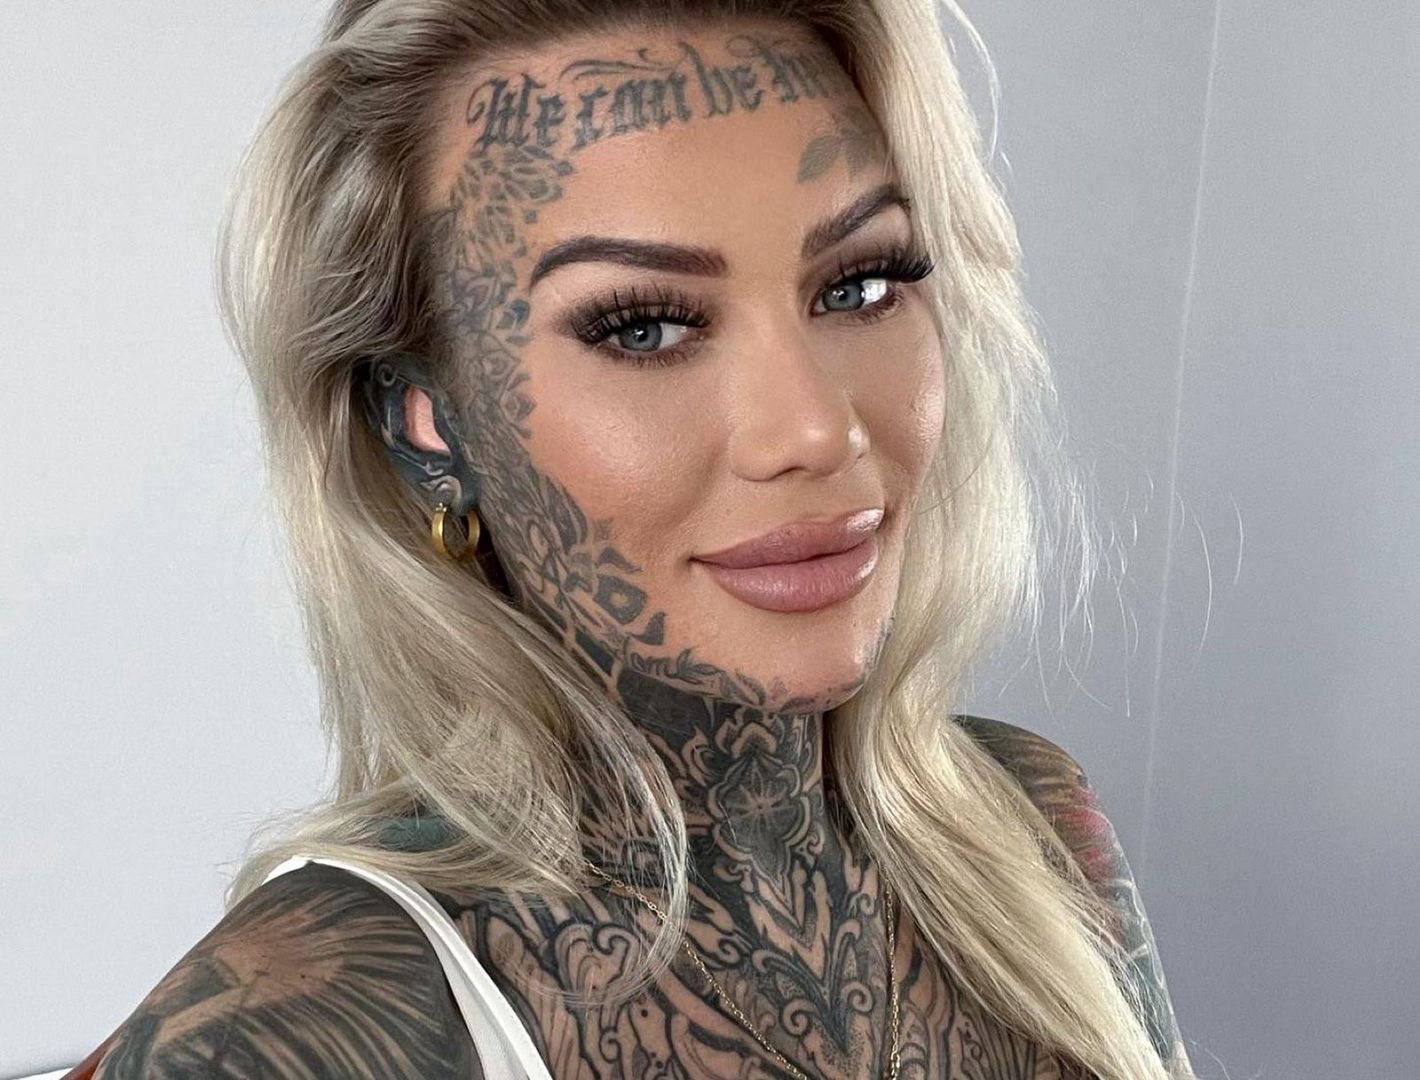 Tatuaże pokrywają prawie jej całe ciało. "Ludzie myślą, że należę do gangu"